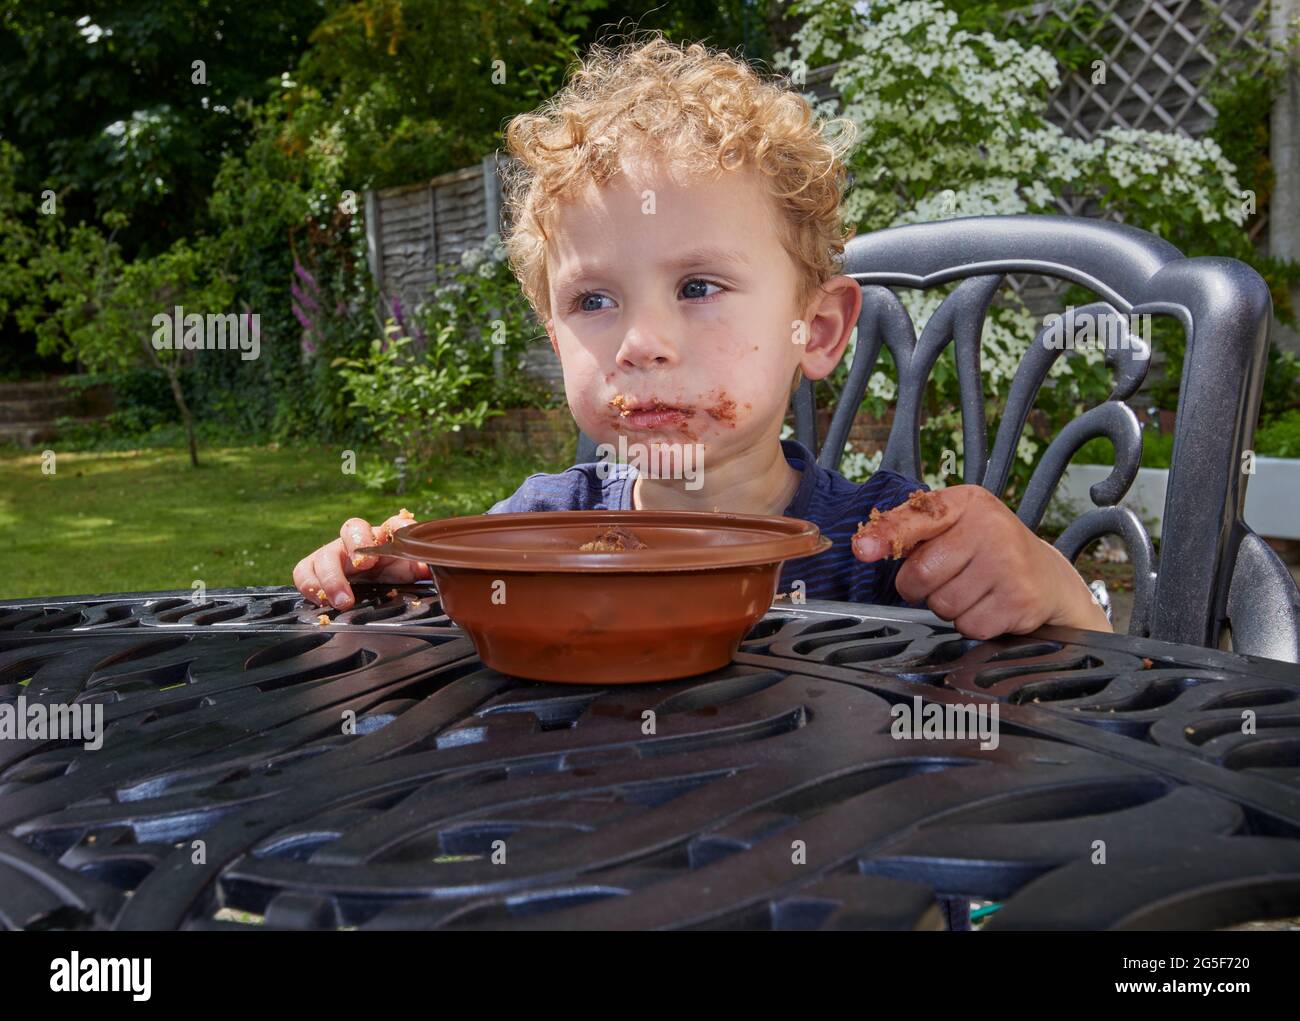 Ein klebriger weißer kaukasischer kleiner Junge im Alter von fast 3 Jahren mit lockigem blondem Haar sitzt im Freien mit einem schmuddeligen braunen Mund, der Schokoladenkuchen isst Stockfoto